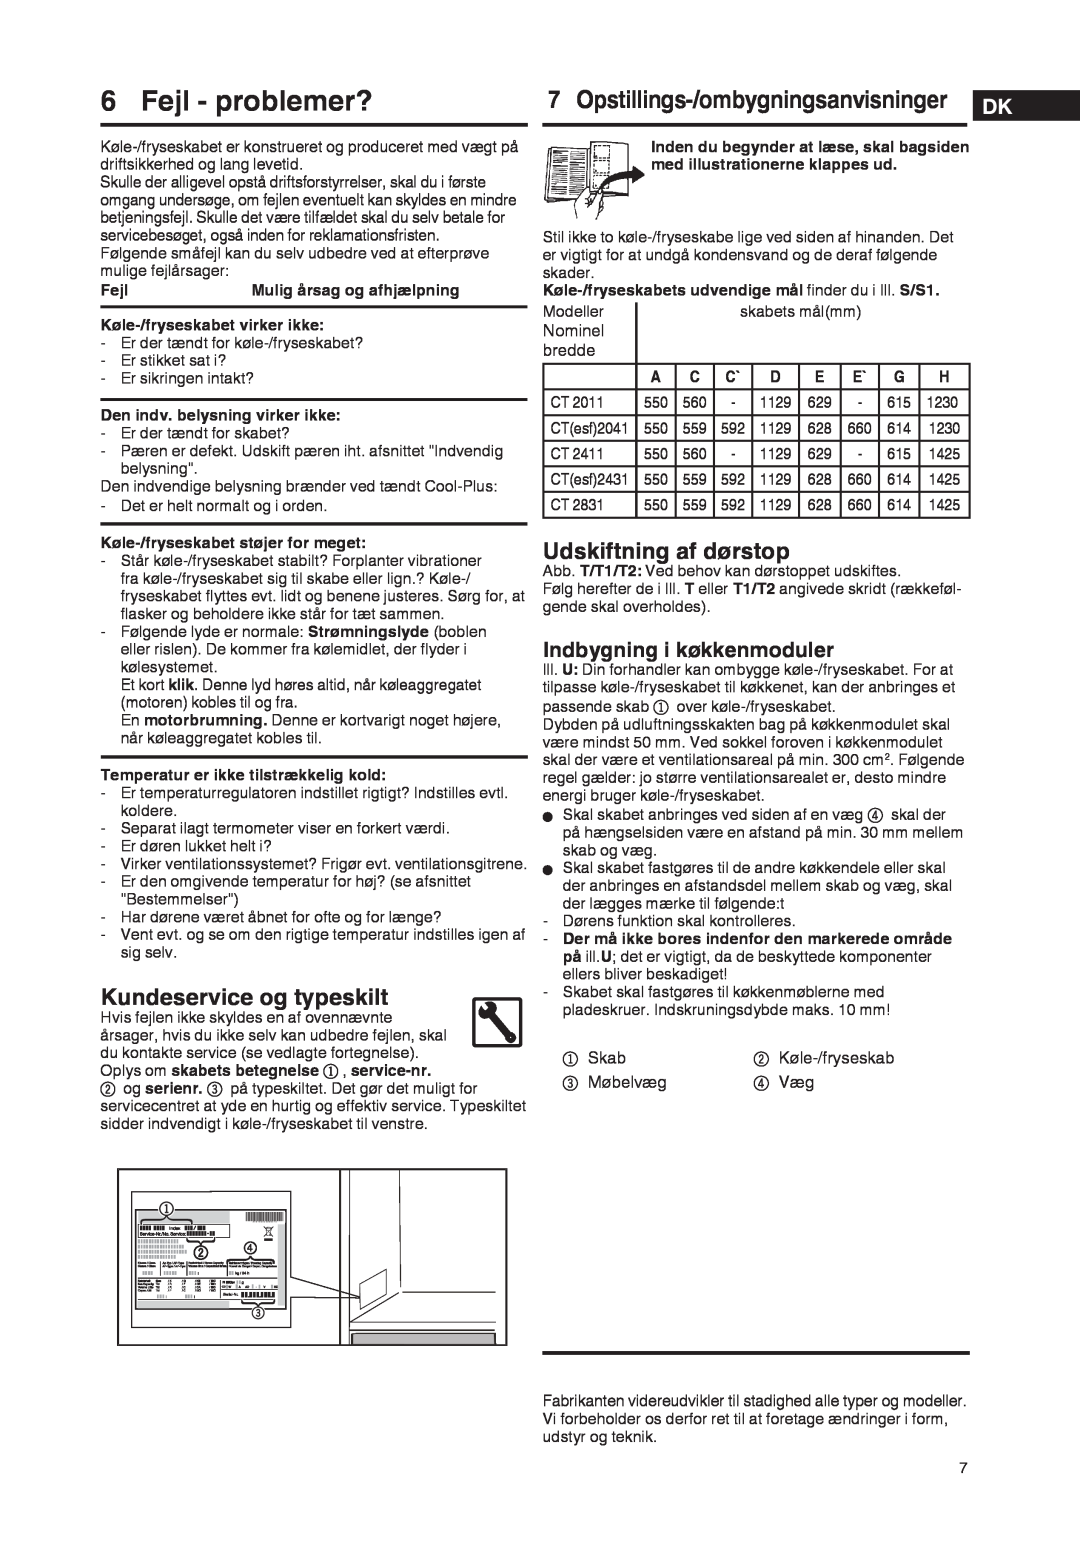 Liebherr 7061 929-01 Fejl - problemer?, Kundeservice og typeskilt, Udskiftning af dørstop, Indbygning i køkkenmoduler 